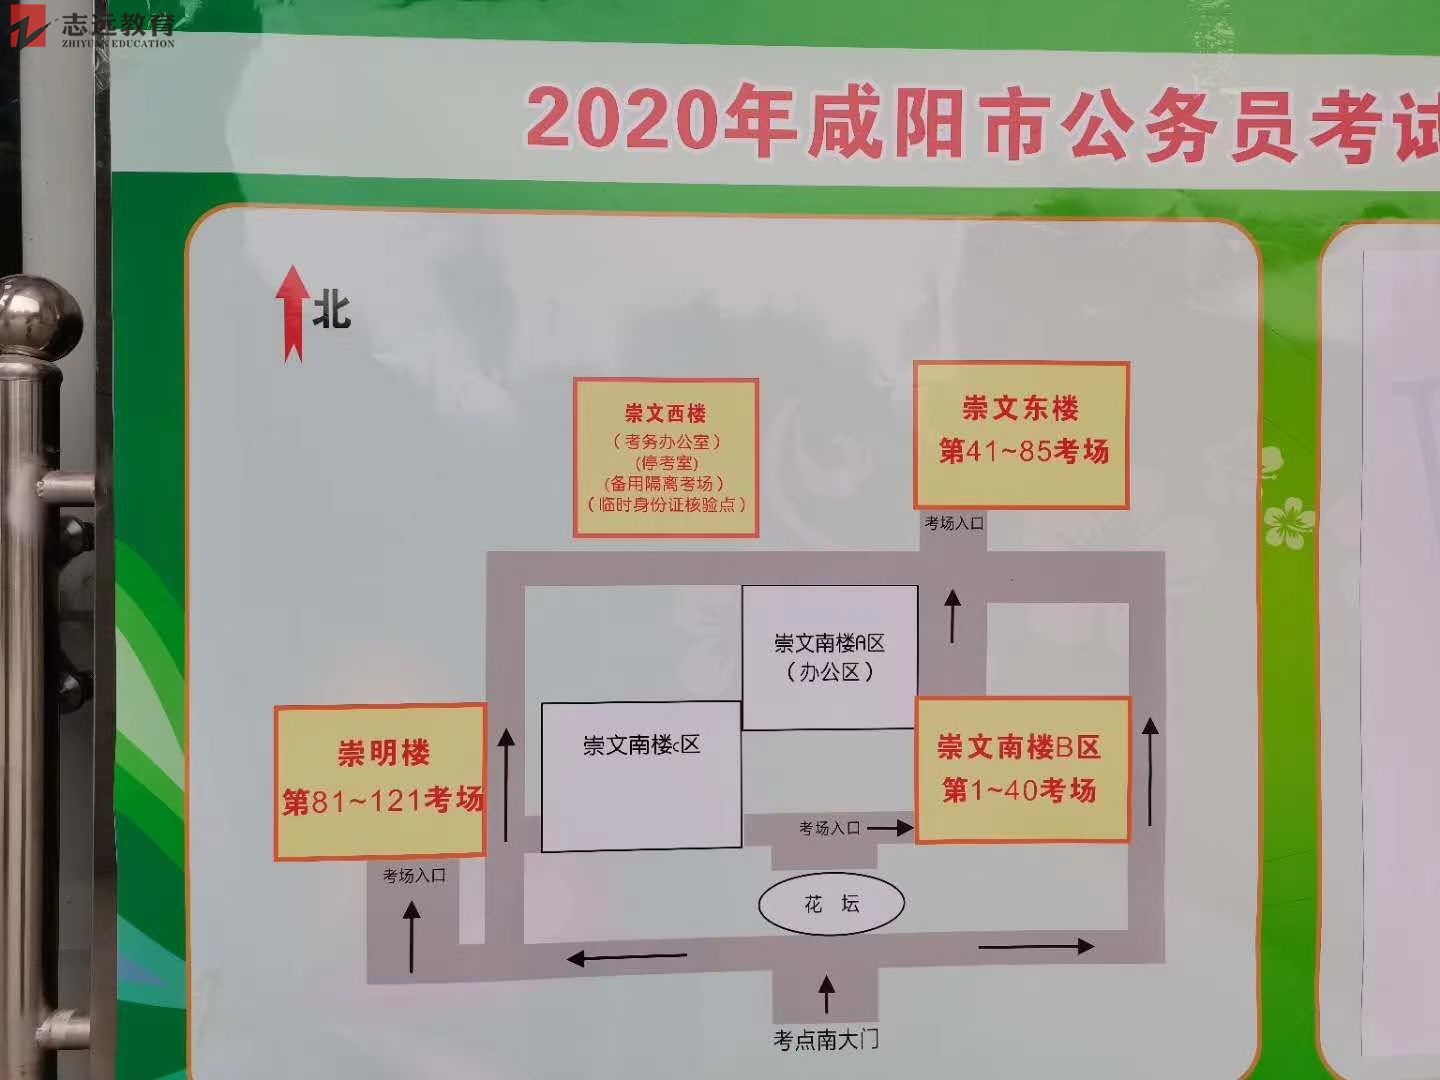 2020陕西公务员考试咸阳考点(陕西工业职业技术学院)(图3)